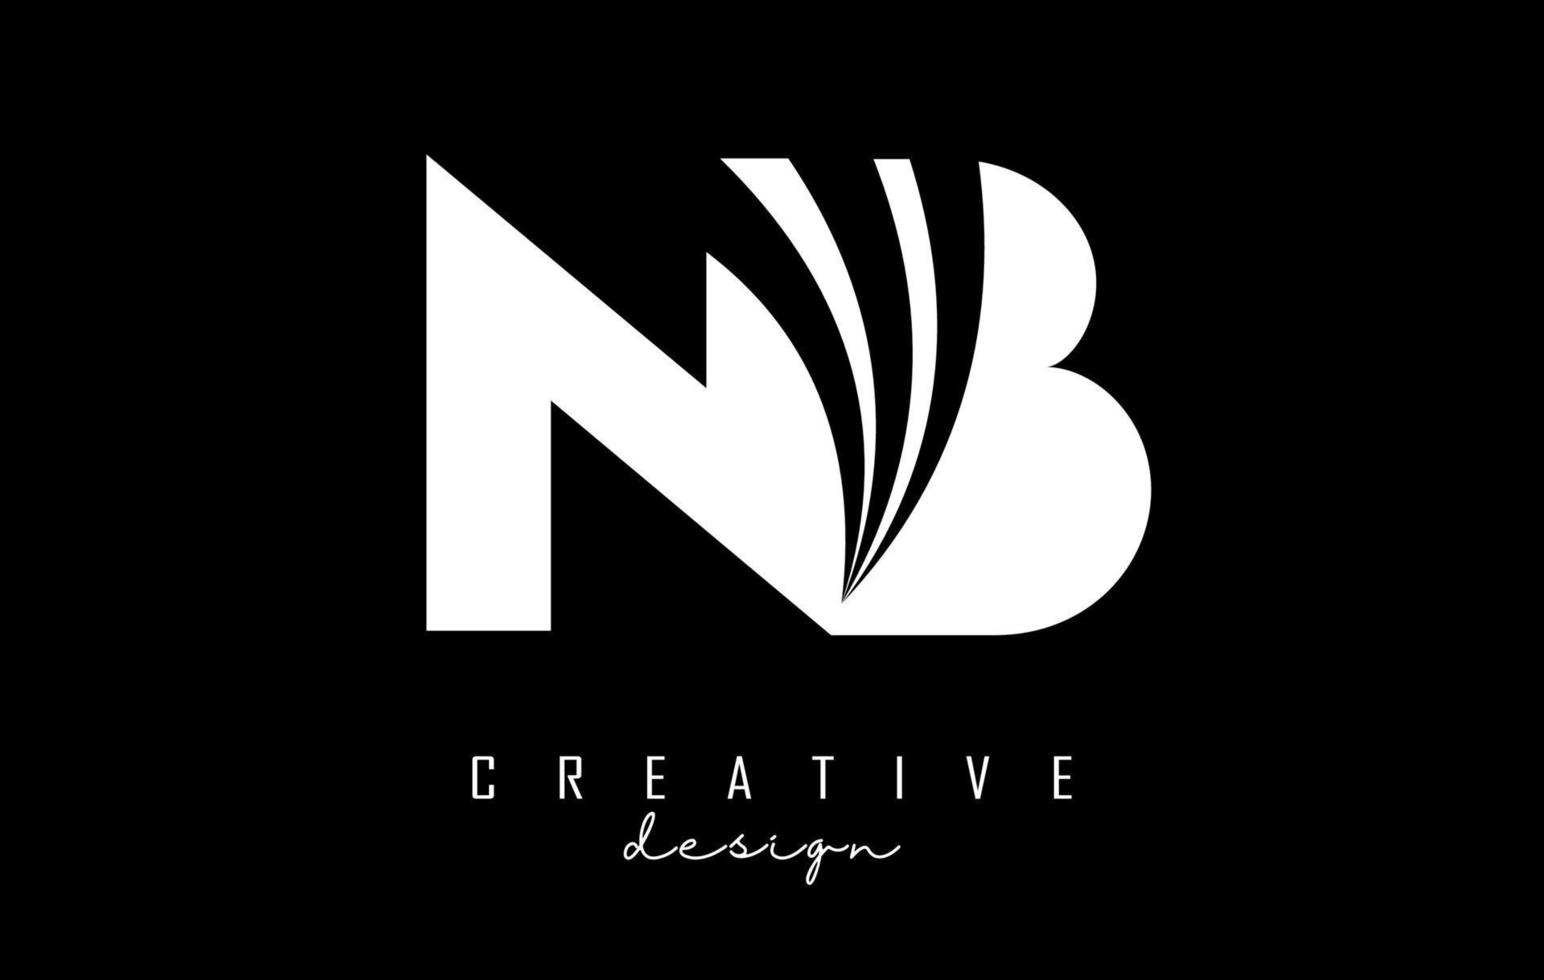 kreative weiße buchstaben nb nb-logo mit führenden linien und straßenkonzeptdesign. Buchstaben mit geometrischem Design. vektor